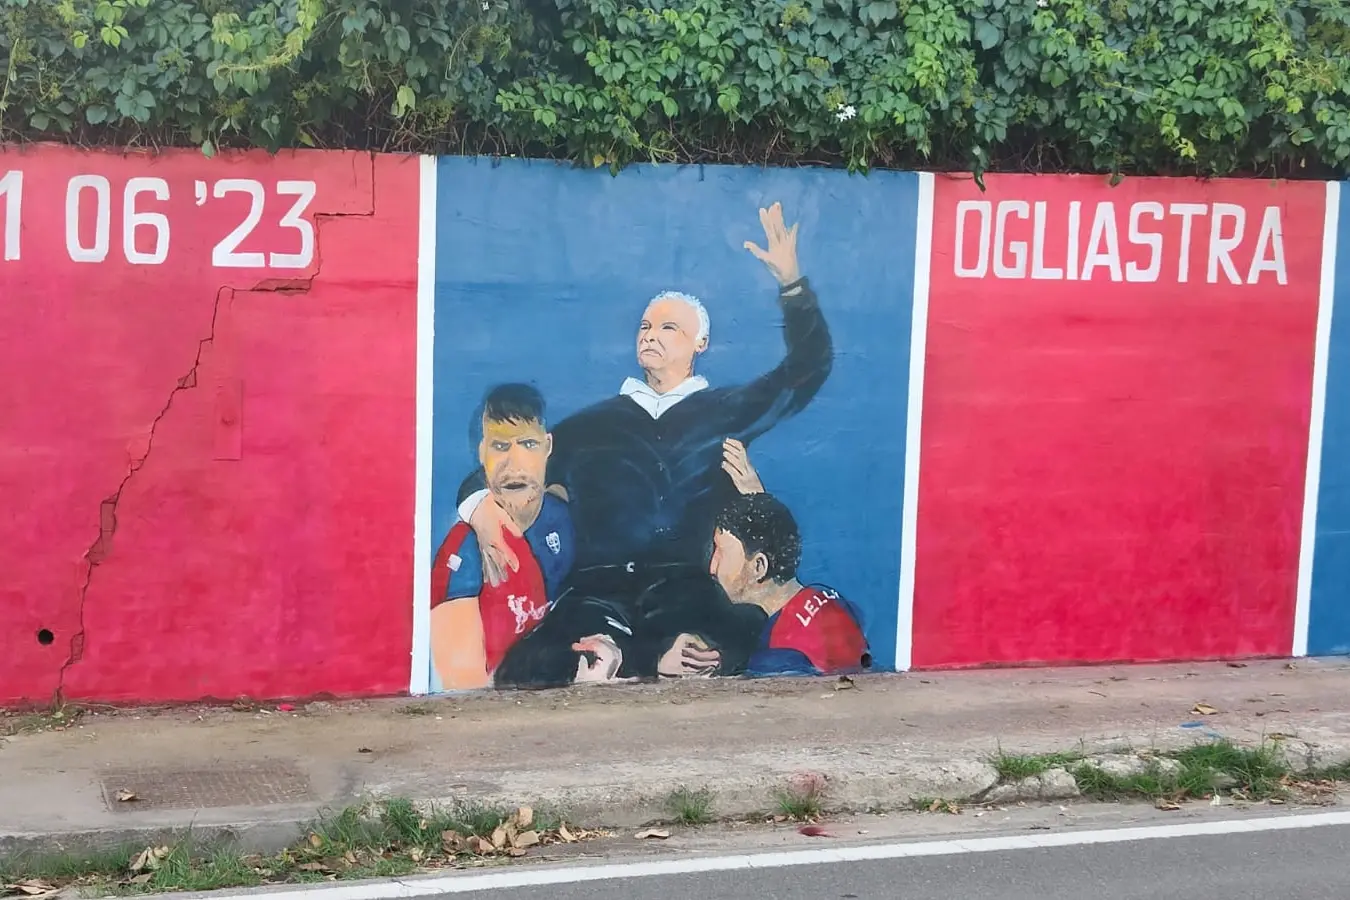 Il murale celebrativo della promozione del Cagliari in Serie A realizzato da Daniele Palmas a Girasole (foto Secci)